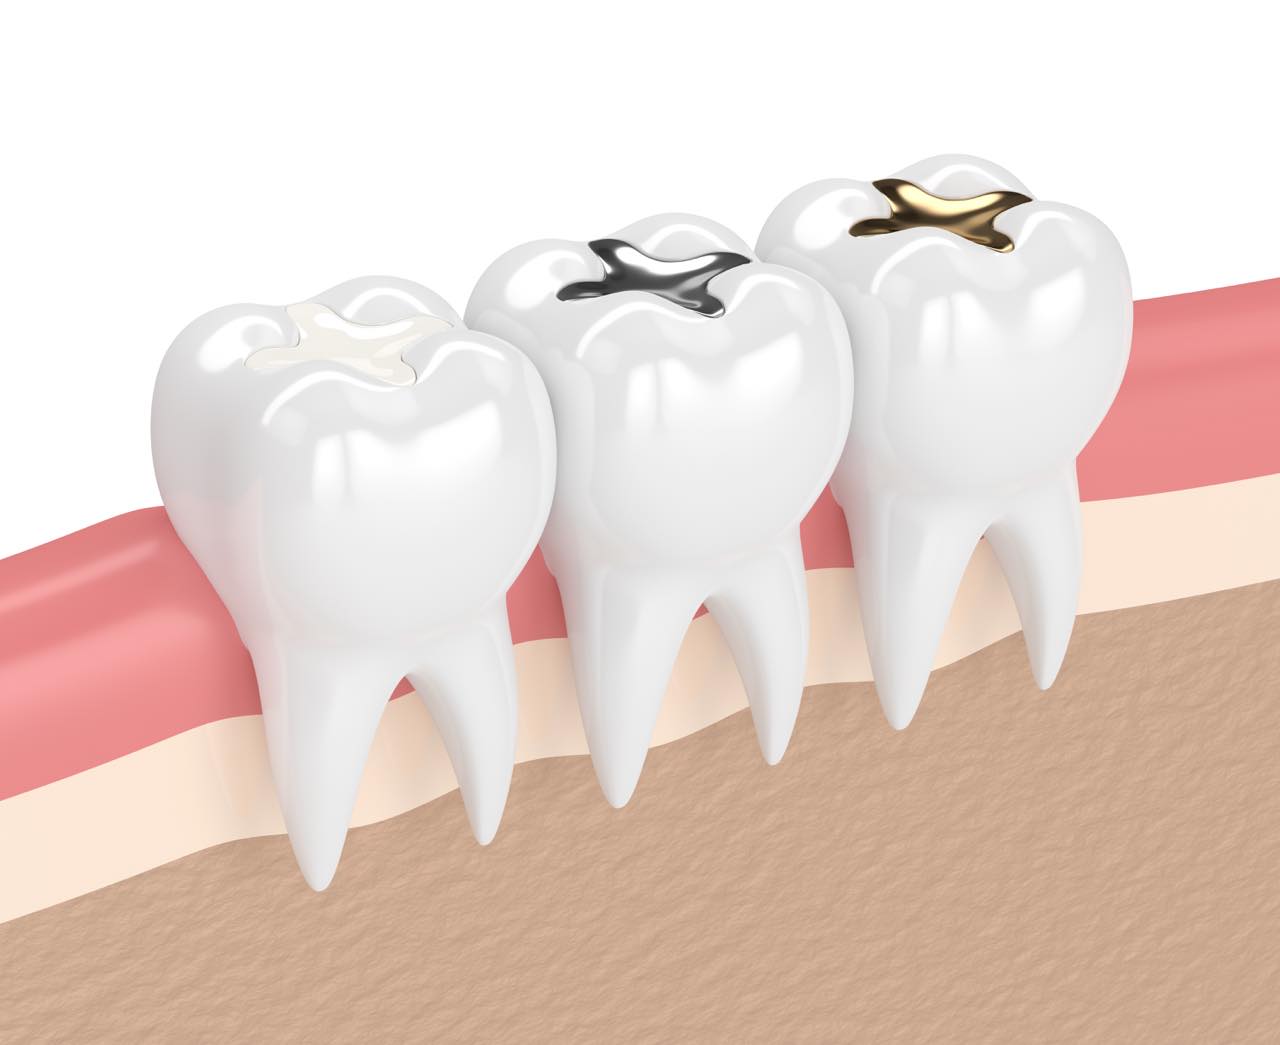 セラミックの歯が取れた場合の対処法とよくある原因